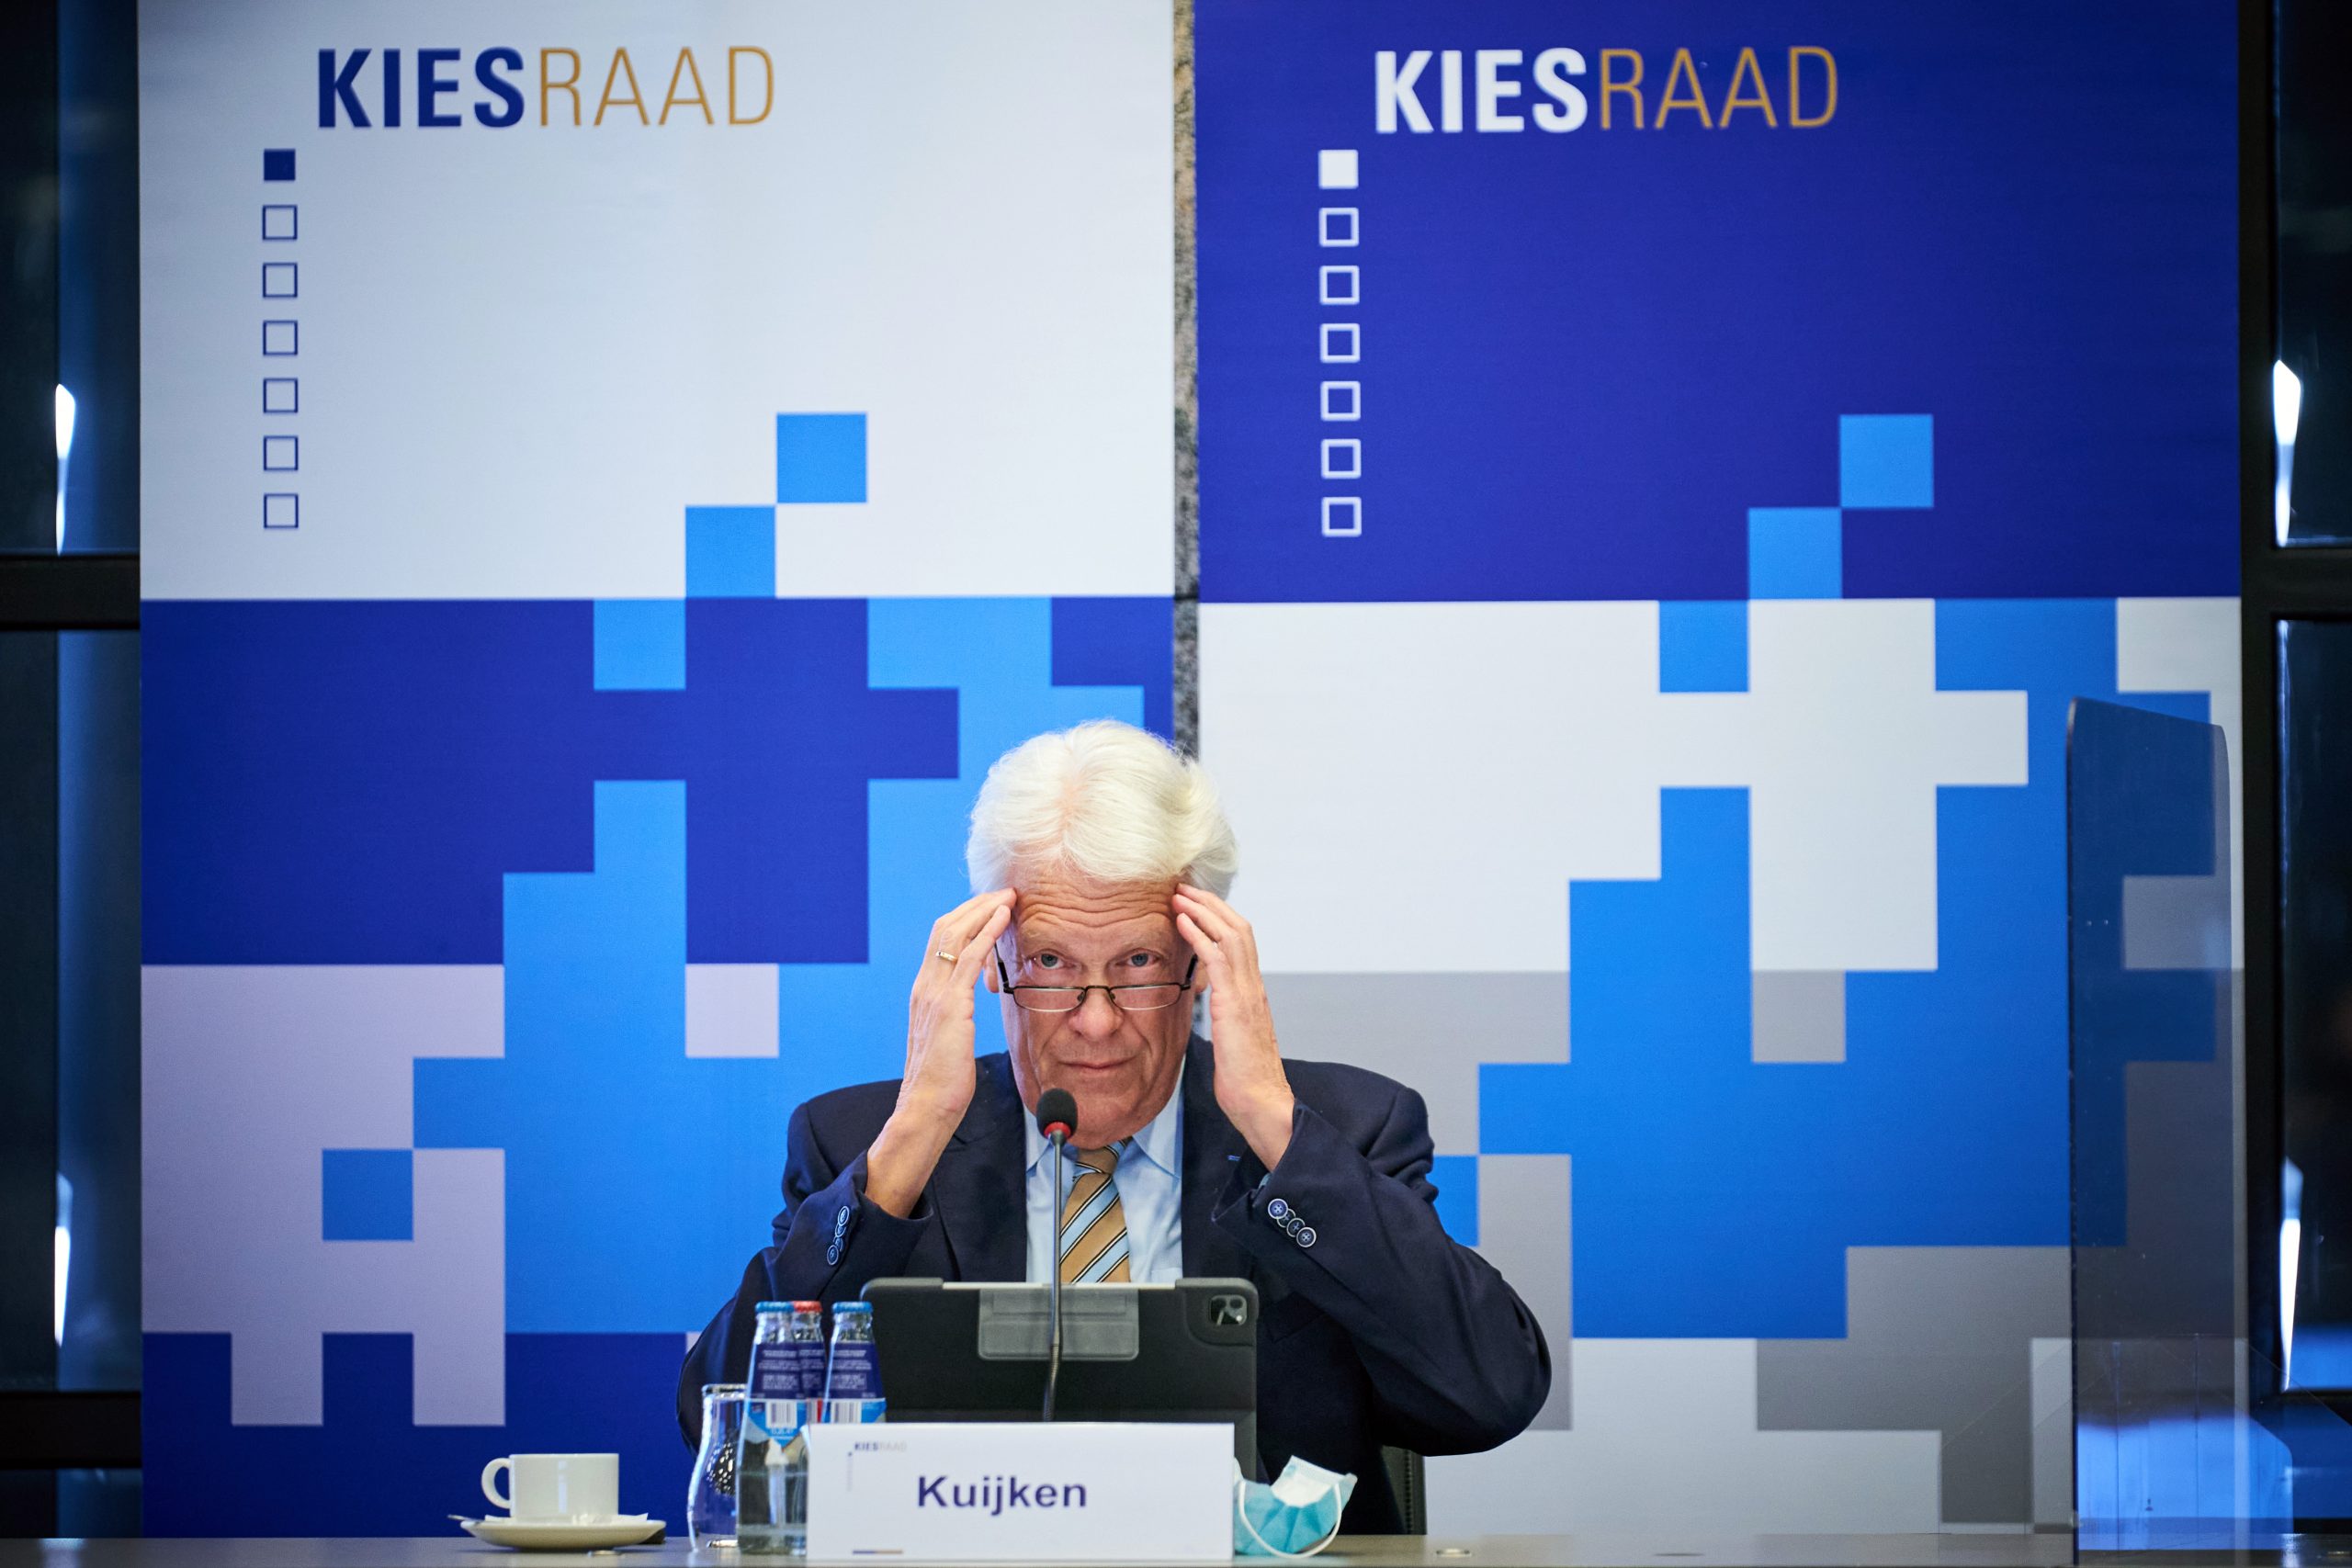 Voorzitter van de Kiesraad Wim Kuijken maakt de officiele uitslag van de Tweede Kamerverkiezingen bekend.